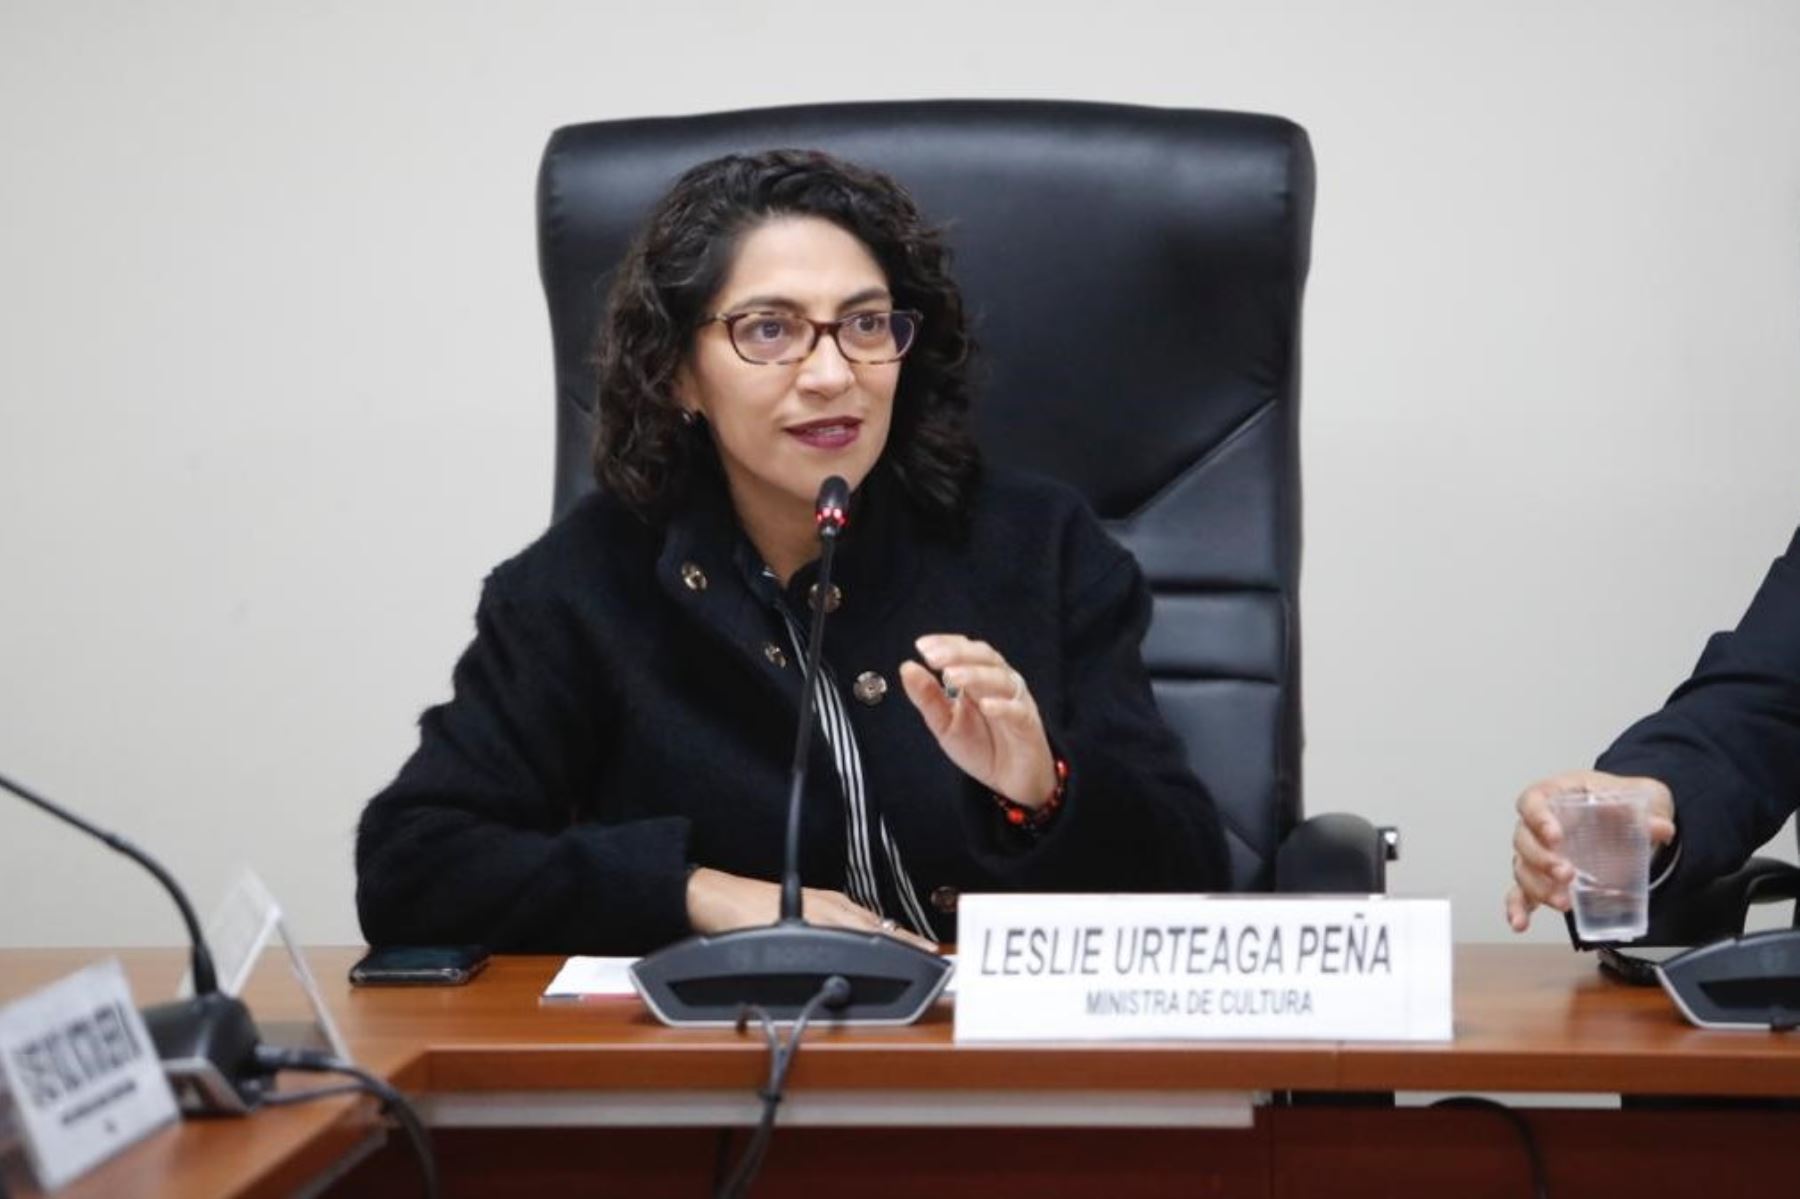 La ministra de Cultura, Leslie Urteaga Peña, se presentó ante la Comisión de Economía del Congreso. Foto: Ministerio de Cultura/Difusión.